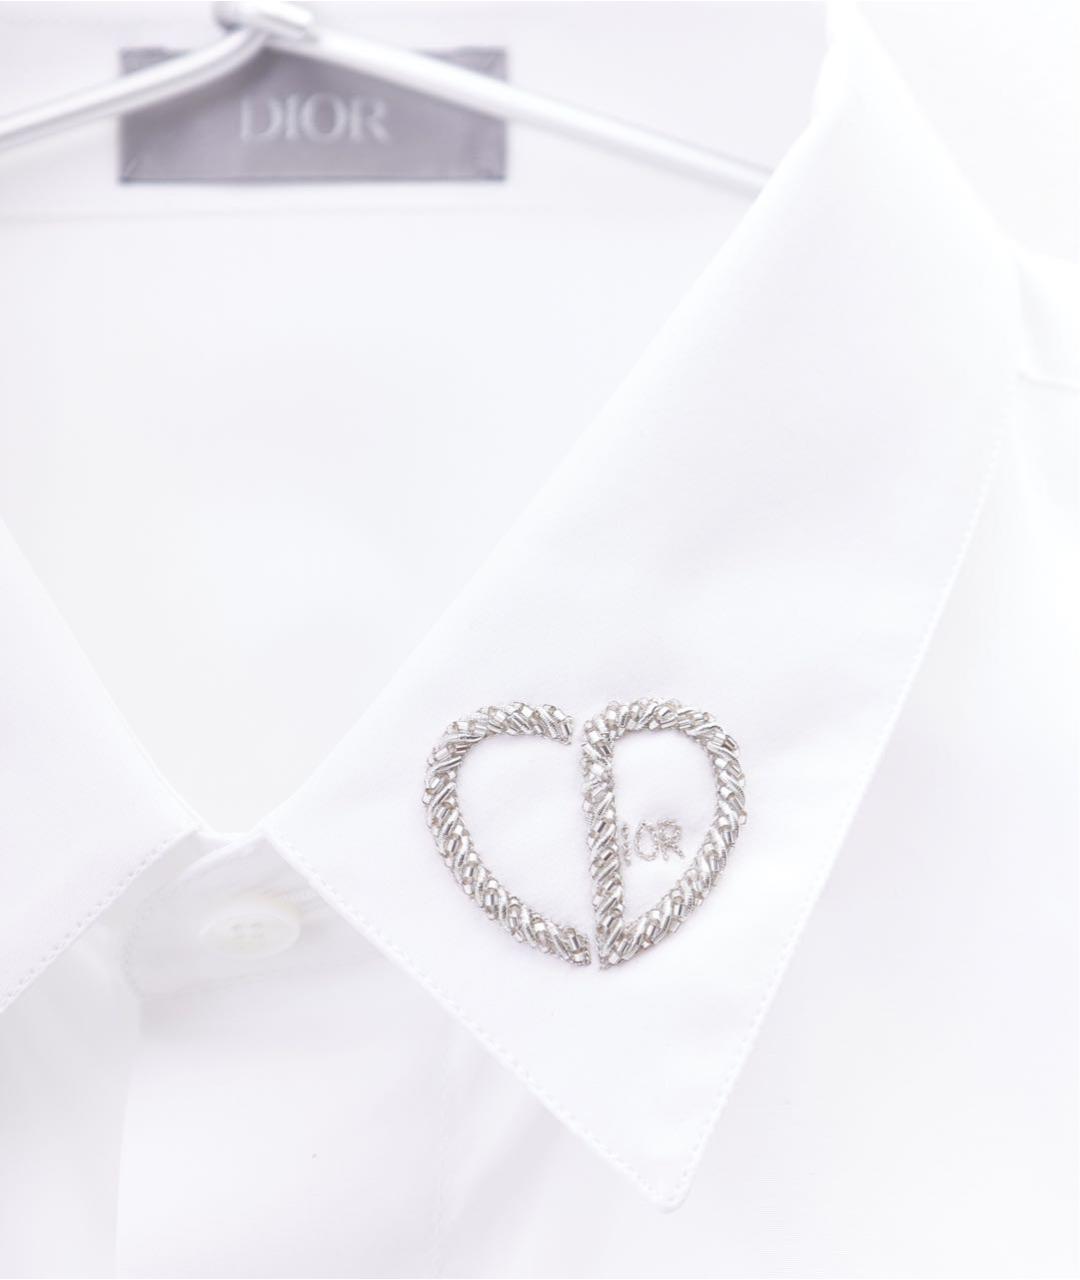 CHRISTIAN DIOR PRE-OWNED Белая хлопковая классическая рубашка, фото 4